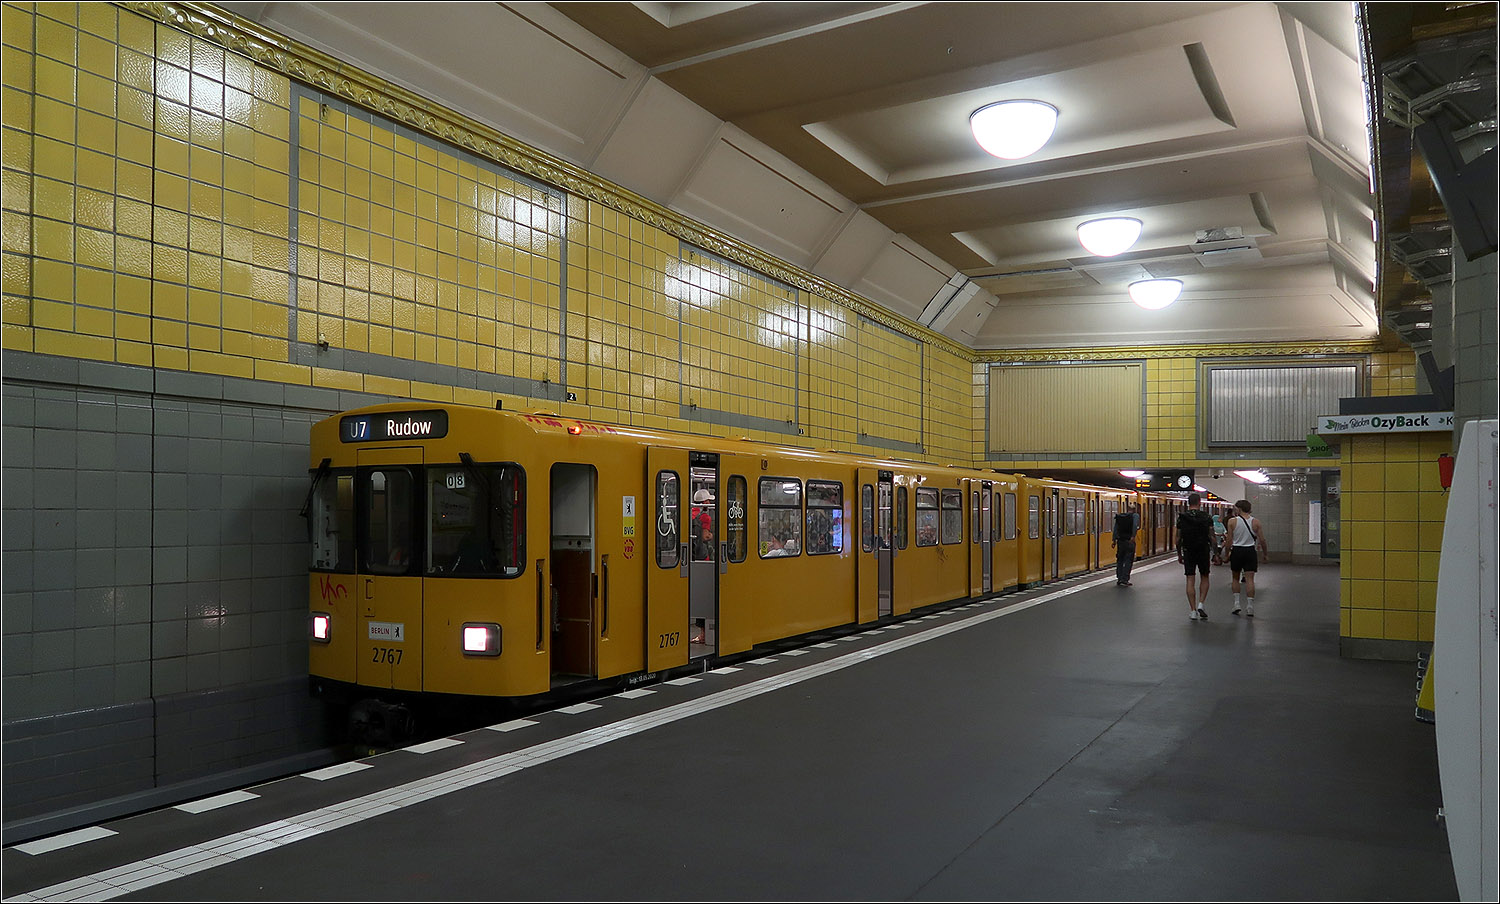 Da wo sich U7 und U8 kreuzen - 

U-Bahnhof Hermannplatz in Berlin-Neukölln. In dem 1926 eröffneten unteren Stationsteil der Umsteigehaltestelle fährt heute die U7. Der obere Bahnsteig (heute U8) wurde 1927 eröffnet und kreuzt den unteren Bahnsteig etwa in der Mitte. Der obere Bahnsteig teilt die hohe Halle der unteren Ebene in zwei Teile. Hinter der Wand die hinten im Bild das Gleis und den Bahnsteig quert fährt und hält die U8. Diese Querung wurde mittels einer Stahlfachwerkkonstruktion baulich gelöst. Direkte Treppen verbinden beide Bahnsteige auf kürzestem Weg.

Es wurde auch untersucht die Gleise der beiden Linien nebeneinander zu legen um wie am U-Bahnhof Mehringdamm einen direkten Umstieg in gleicher Richtung am Bahnsteig gegenüber zu ermöglichen. Dies hätte aber für die jetzige U8 enge Gleisradien vor und nach der Station erfordert, um die Gleise parallel zu den der U7 zu bringen.

Die hohe Halle der U7-Ebene am Hermannplatz gehört zu den eindrücklichsten Bahnhofshallen der Berliner U-Bahn.

15.07.2023 (M)